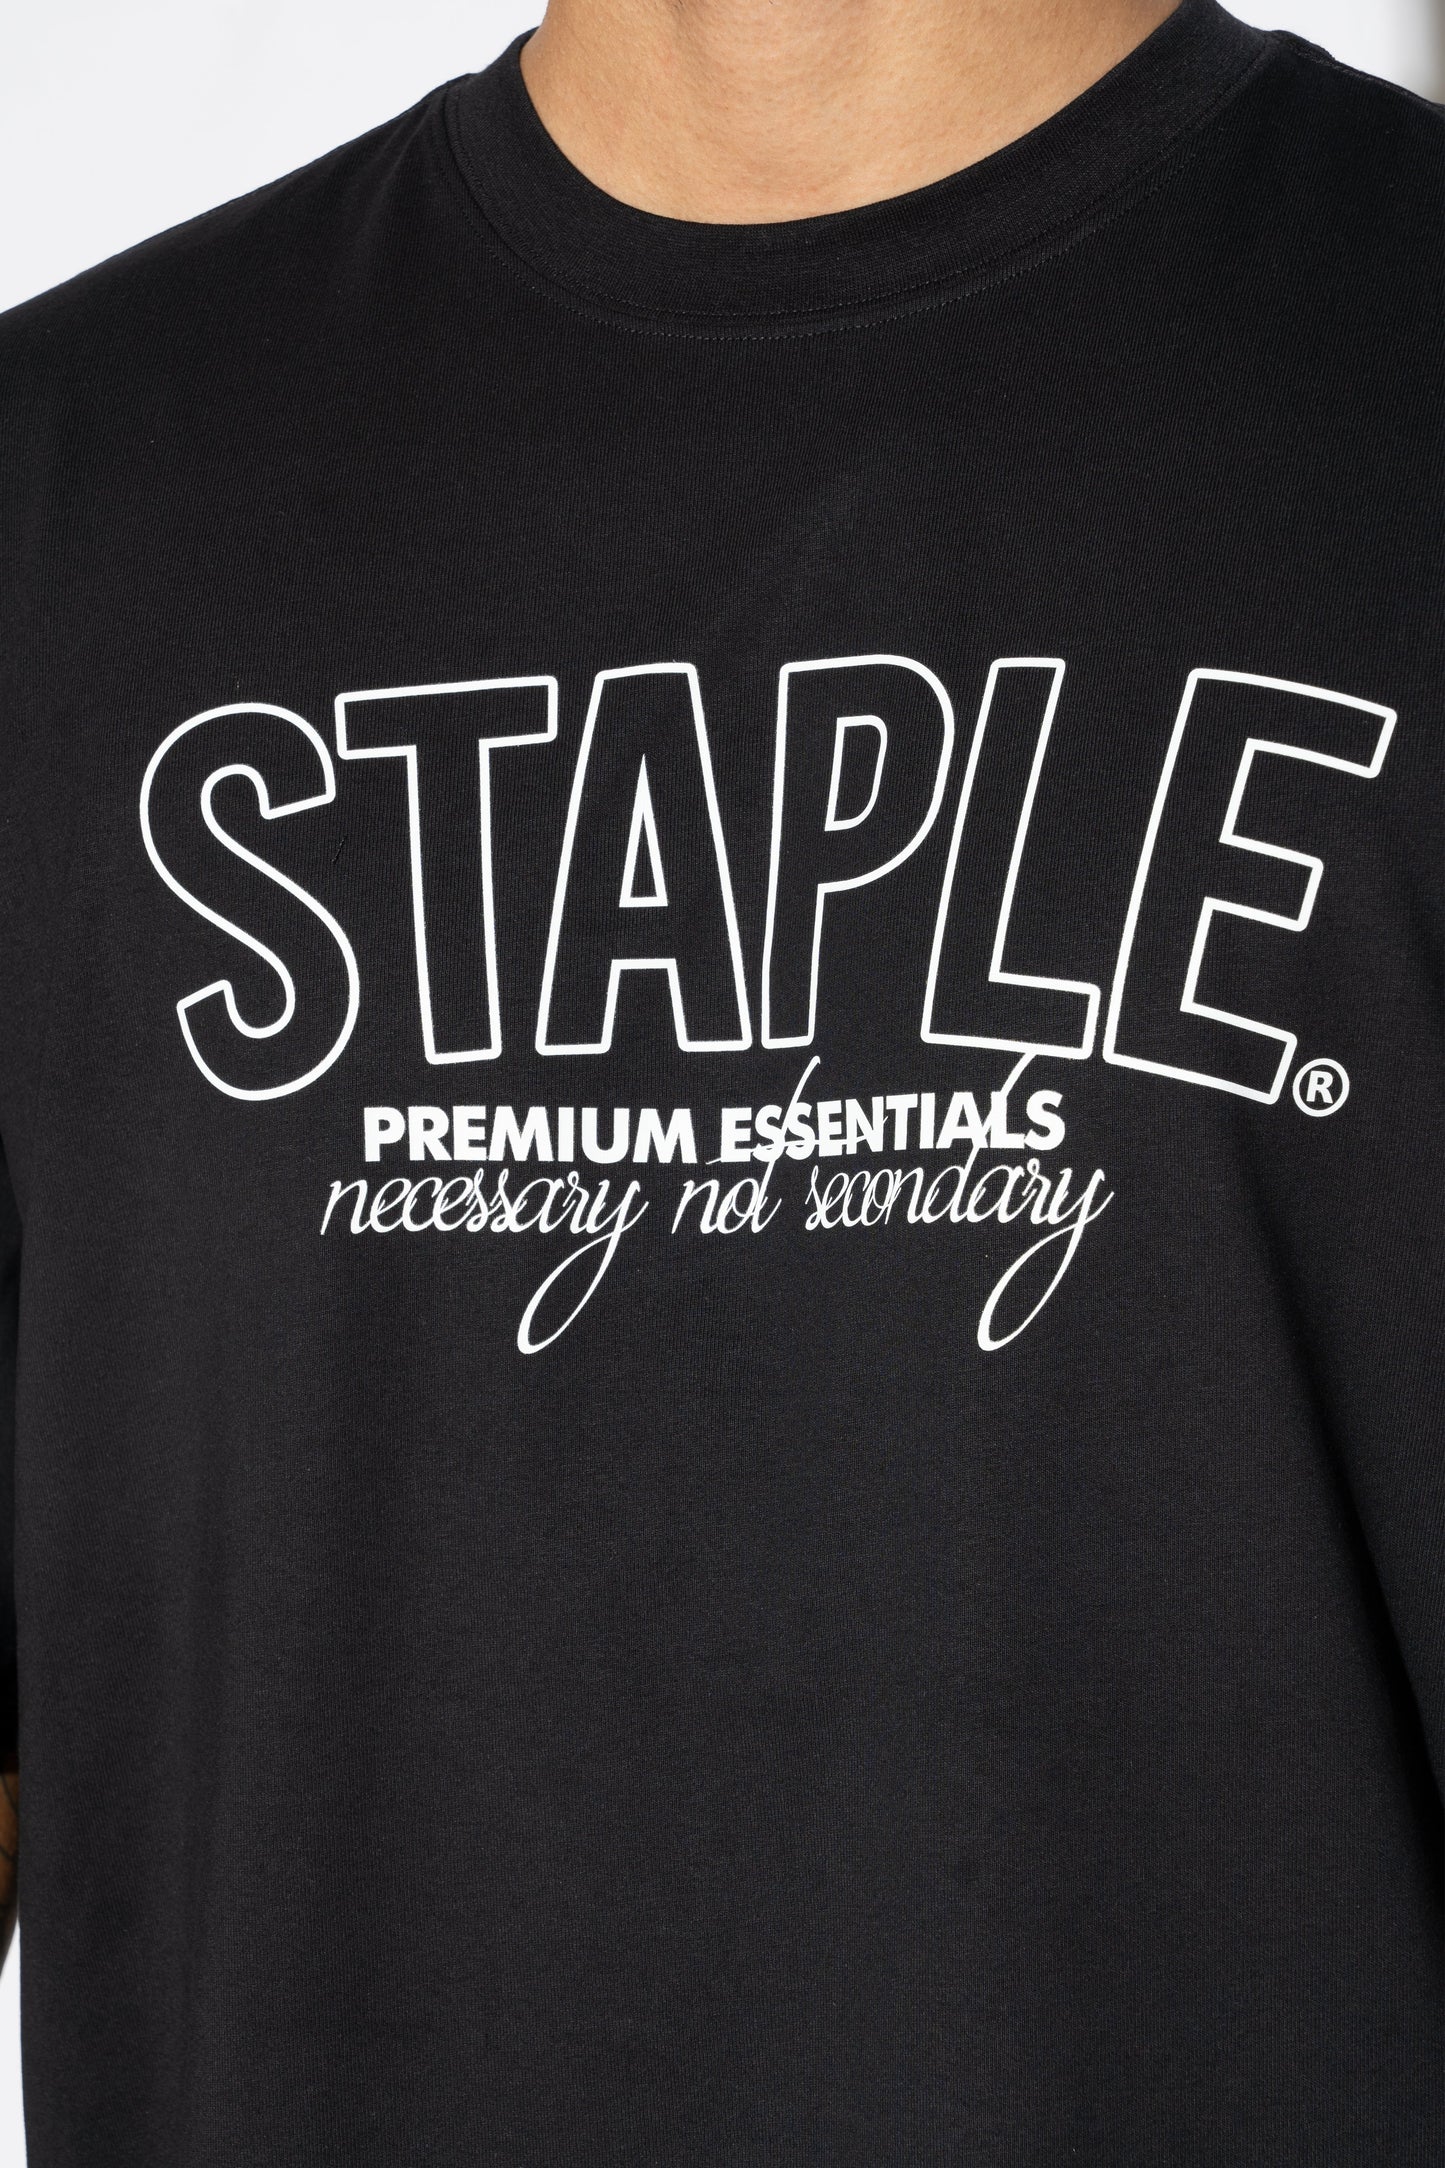 Staple Premium Essentials Tee Black White M